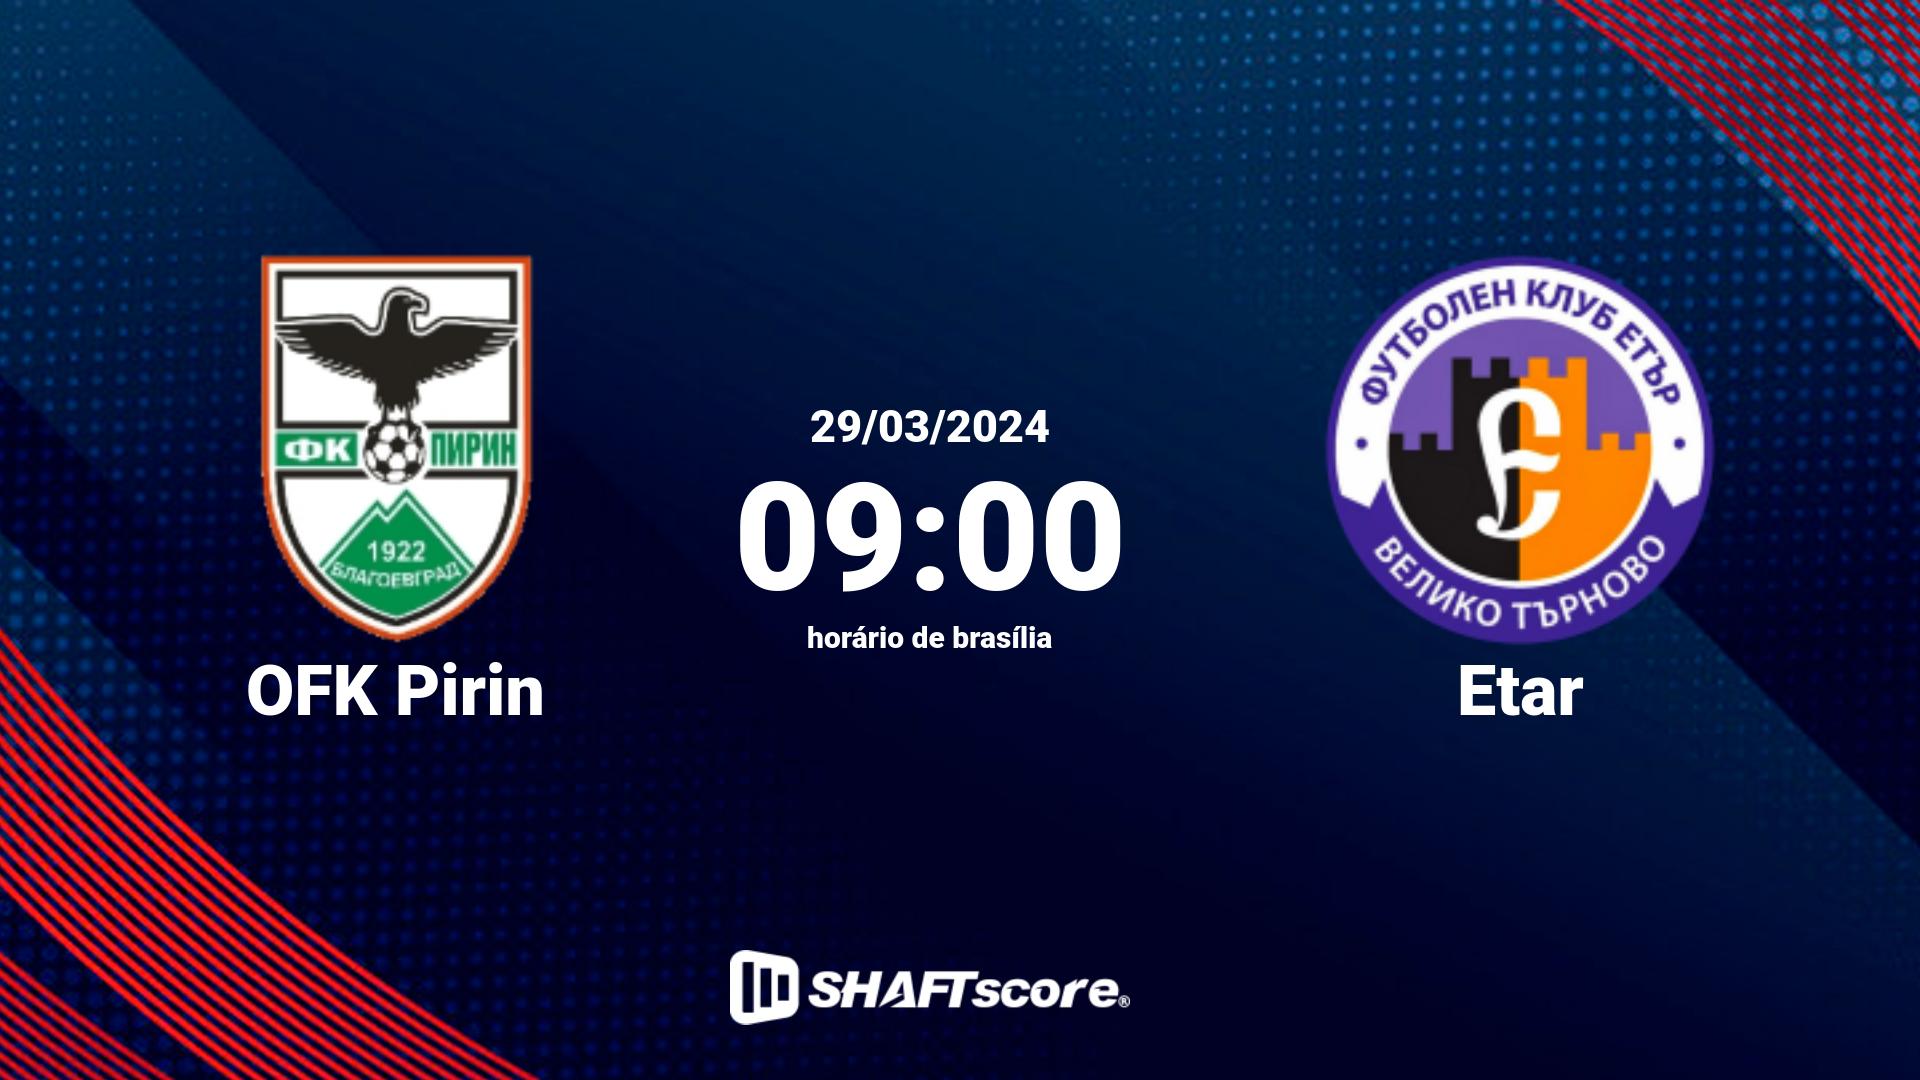 Estatísticas do jogo OFK Pirin vs Etar 29.03 09:00